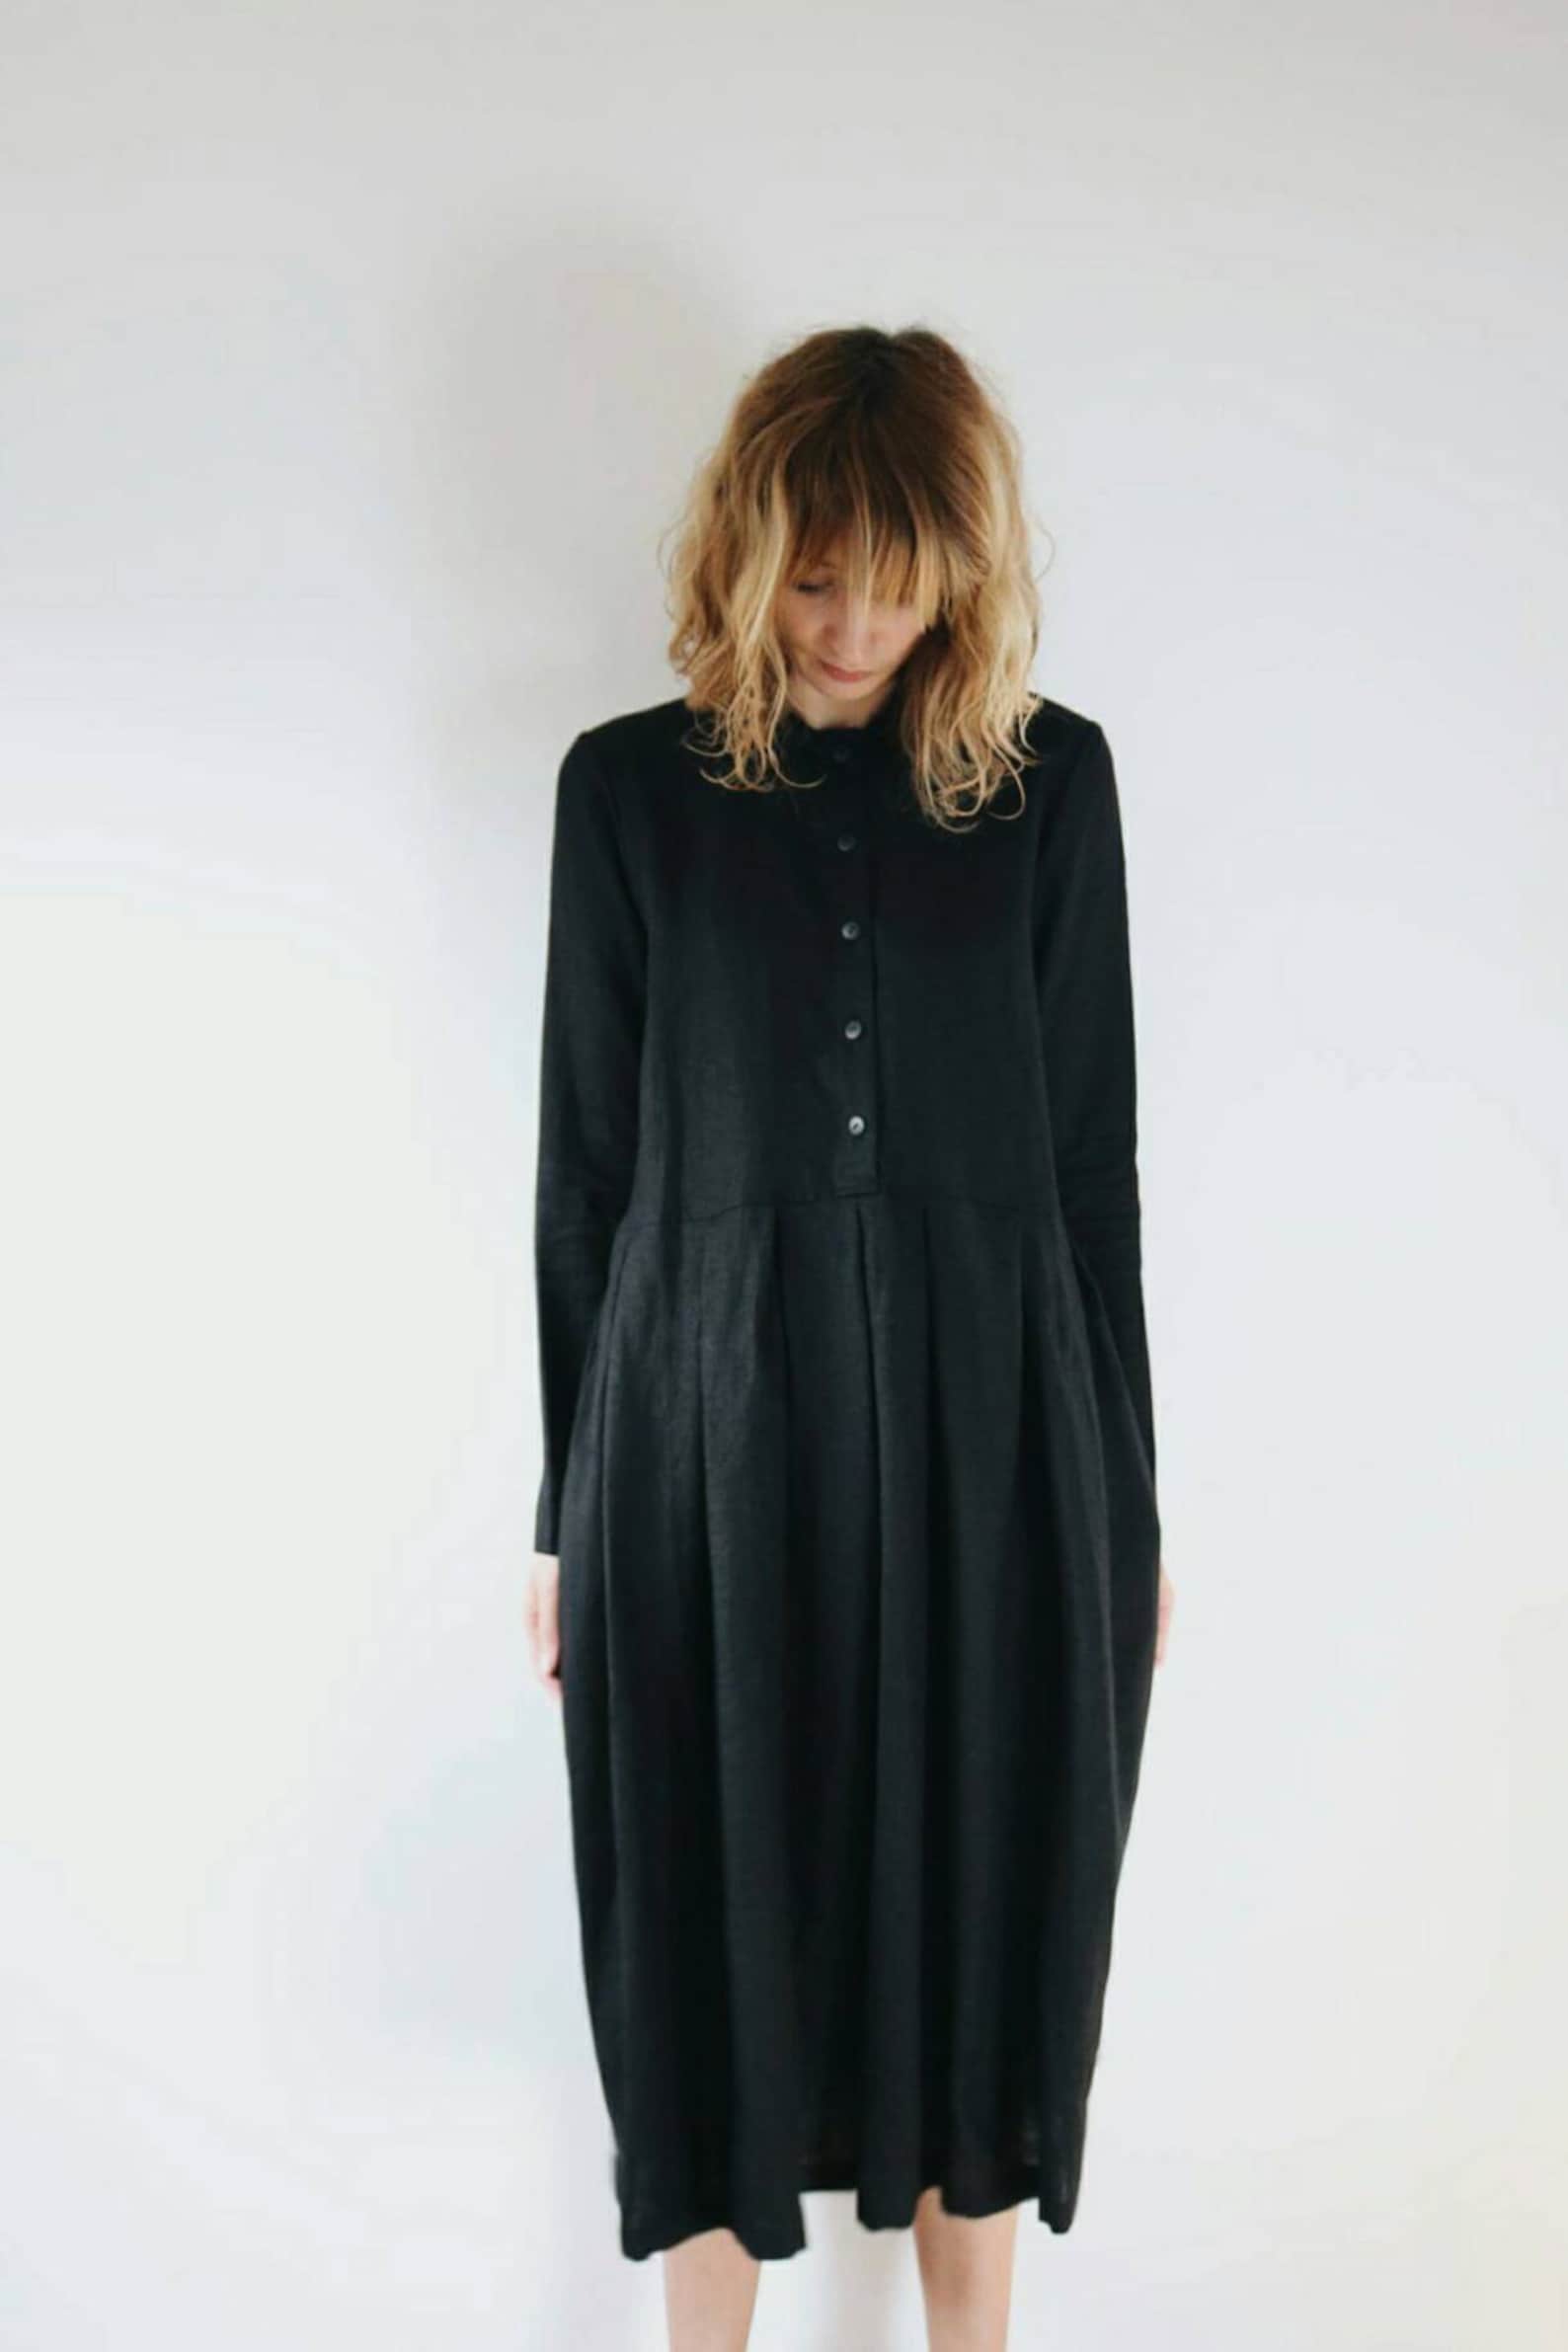 Black Linen Dress Long Sleeve Linen Dress Shirt Collar - Etsy